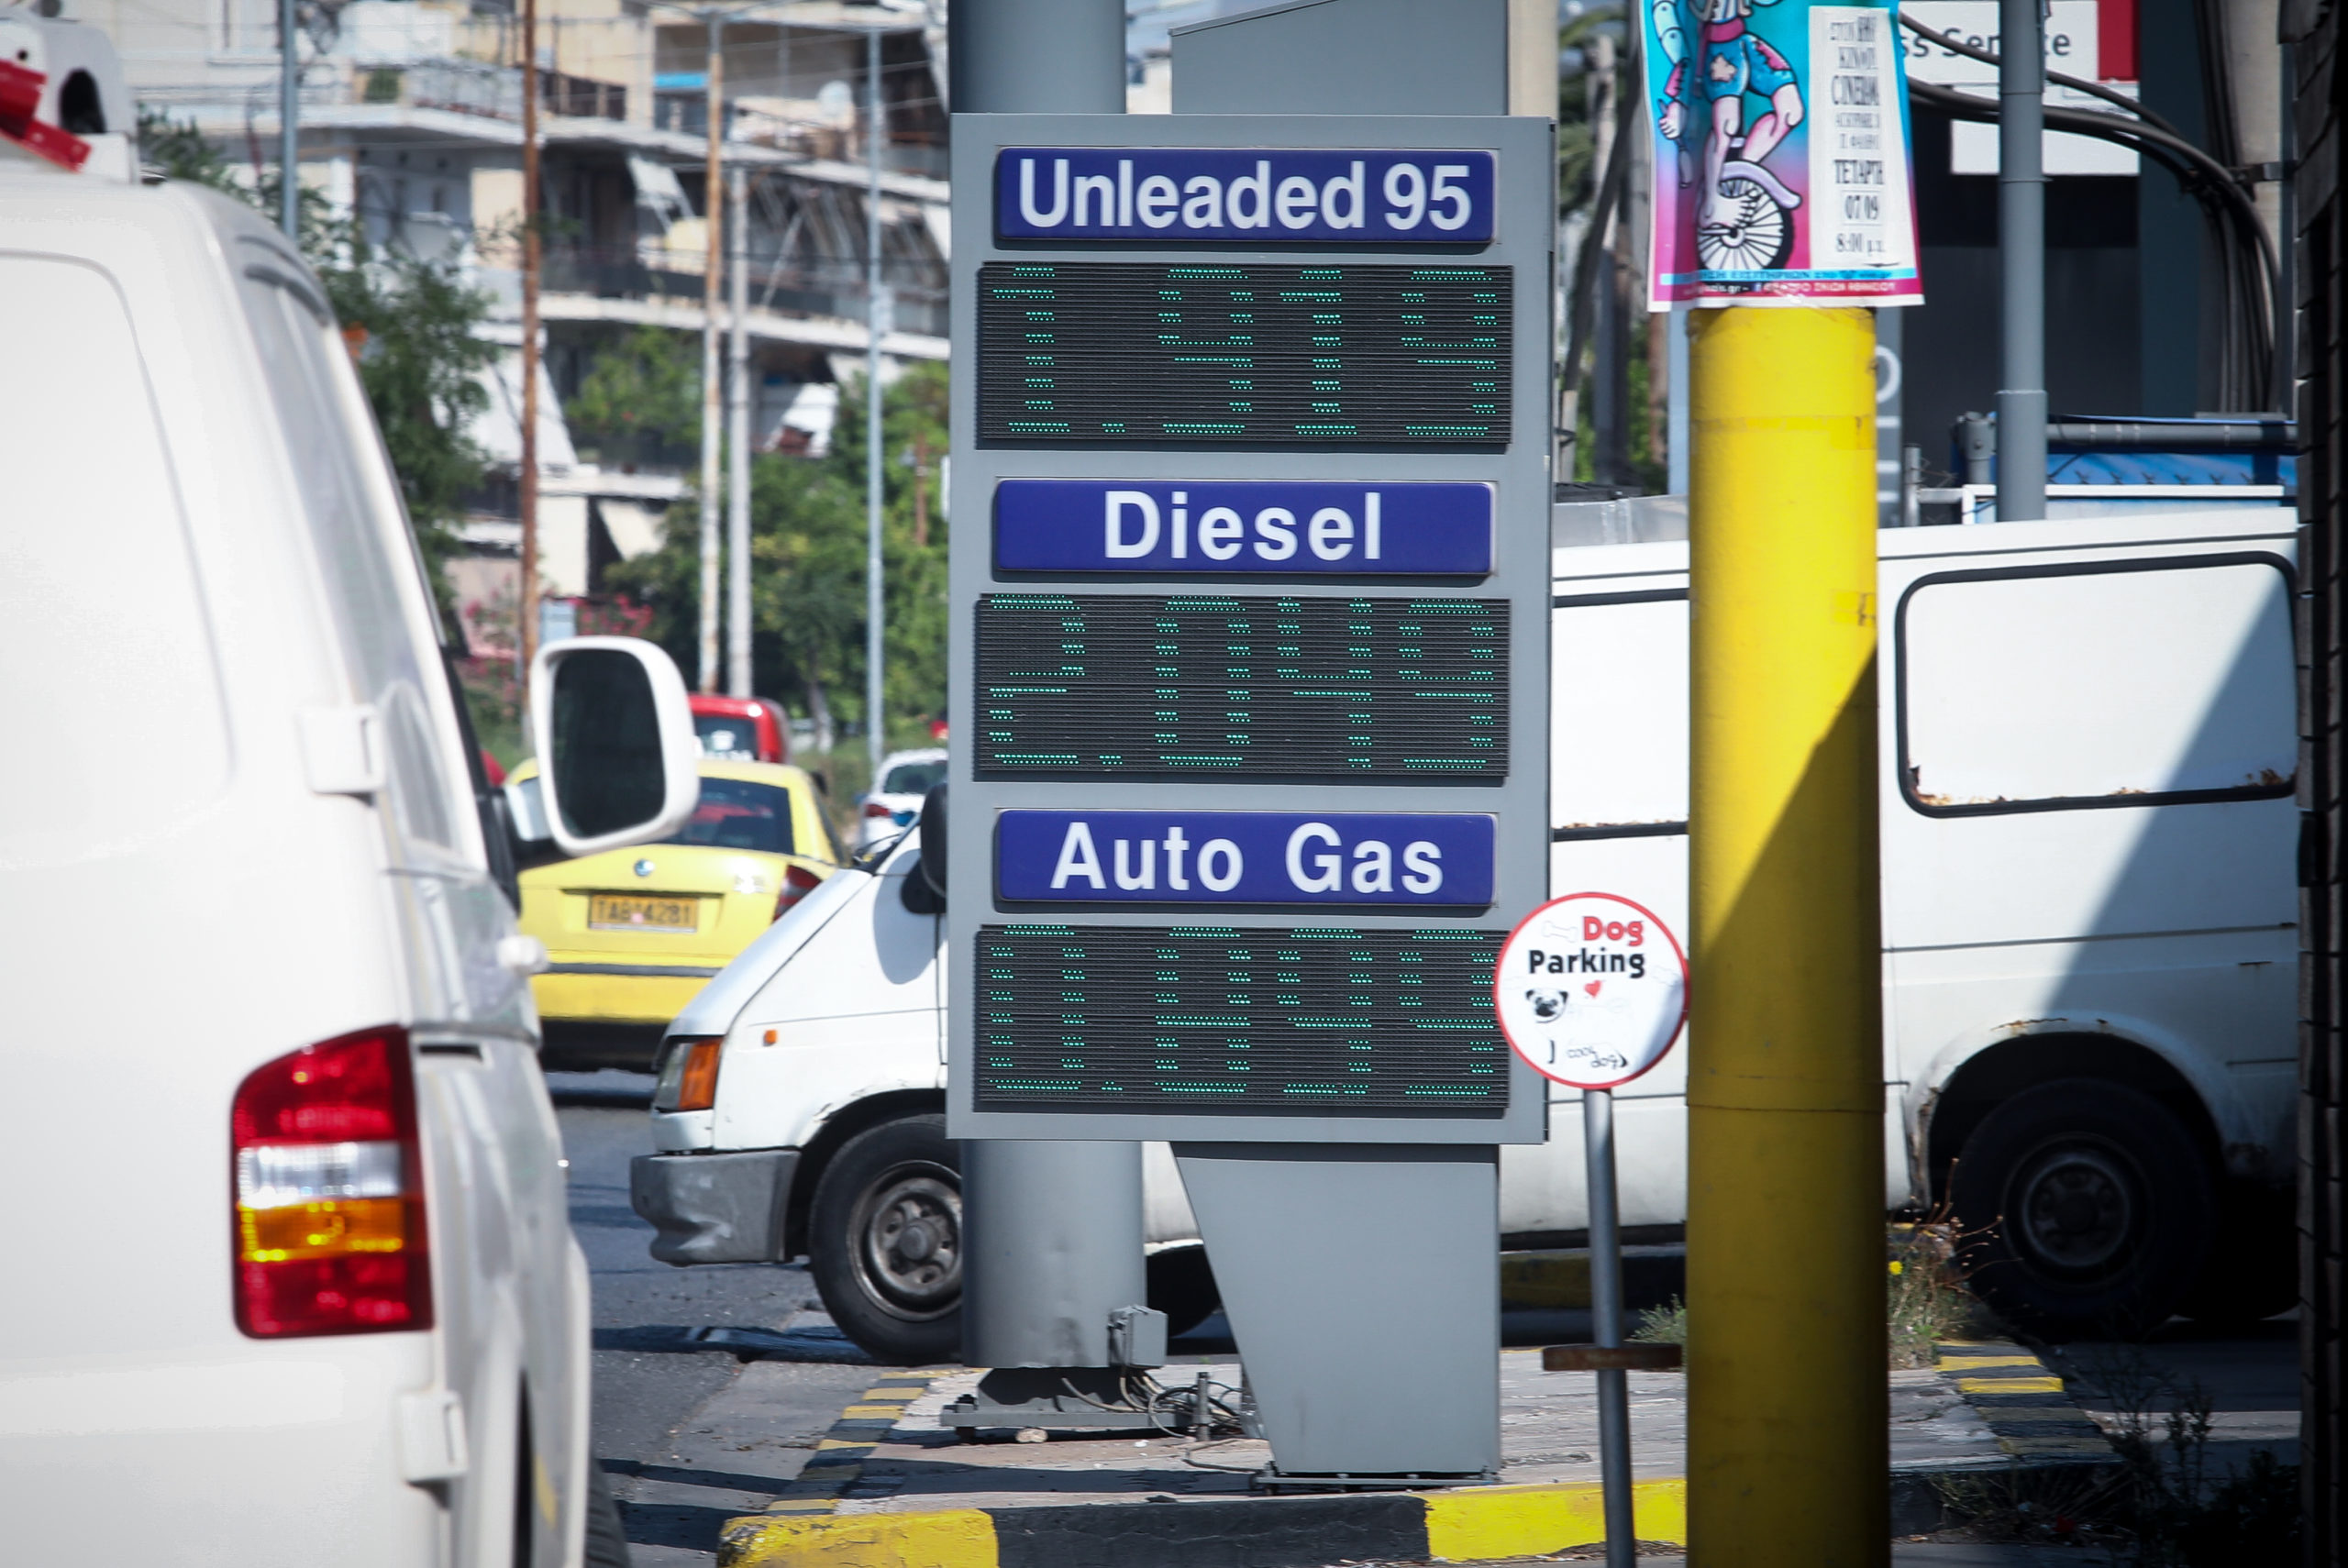 Γιατί παρατηρούνται αυξήσεις στις τιμές των καυσίμων τις τελευταίες μέρες